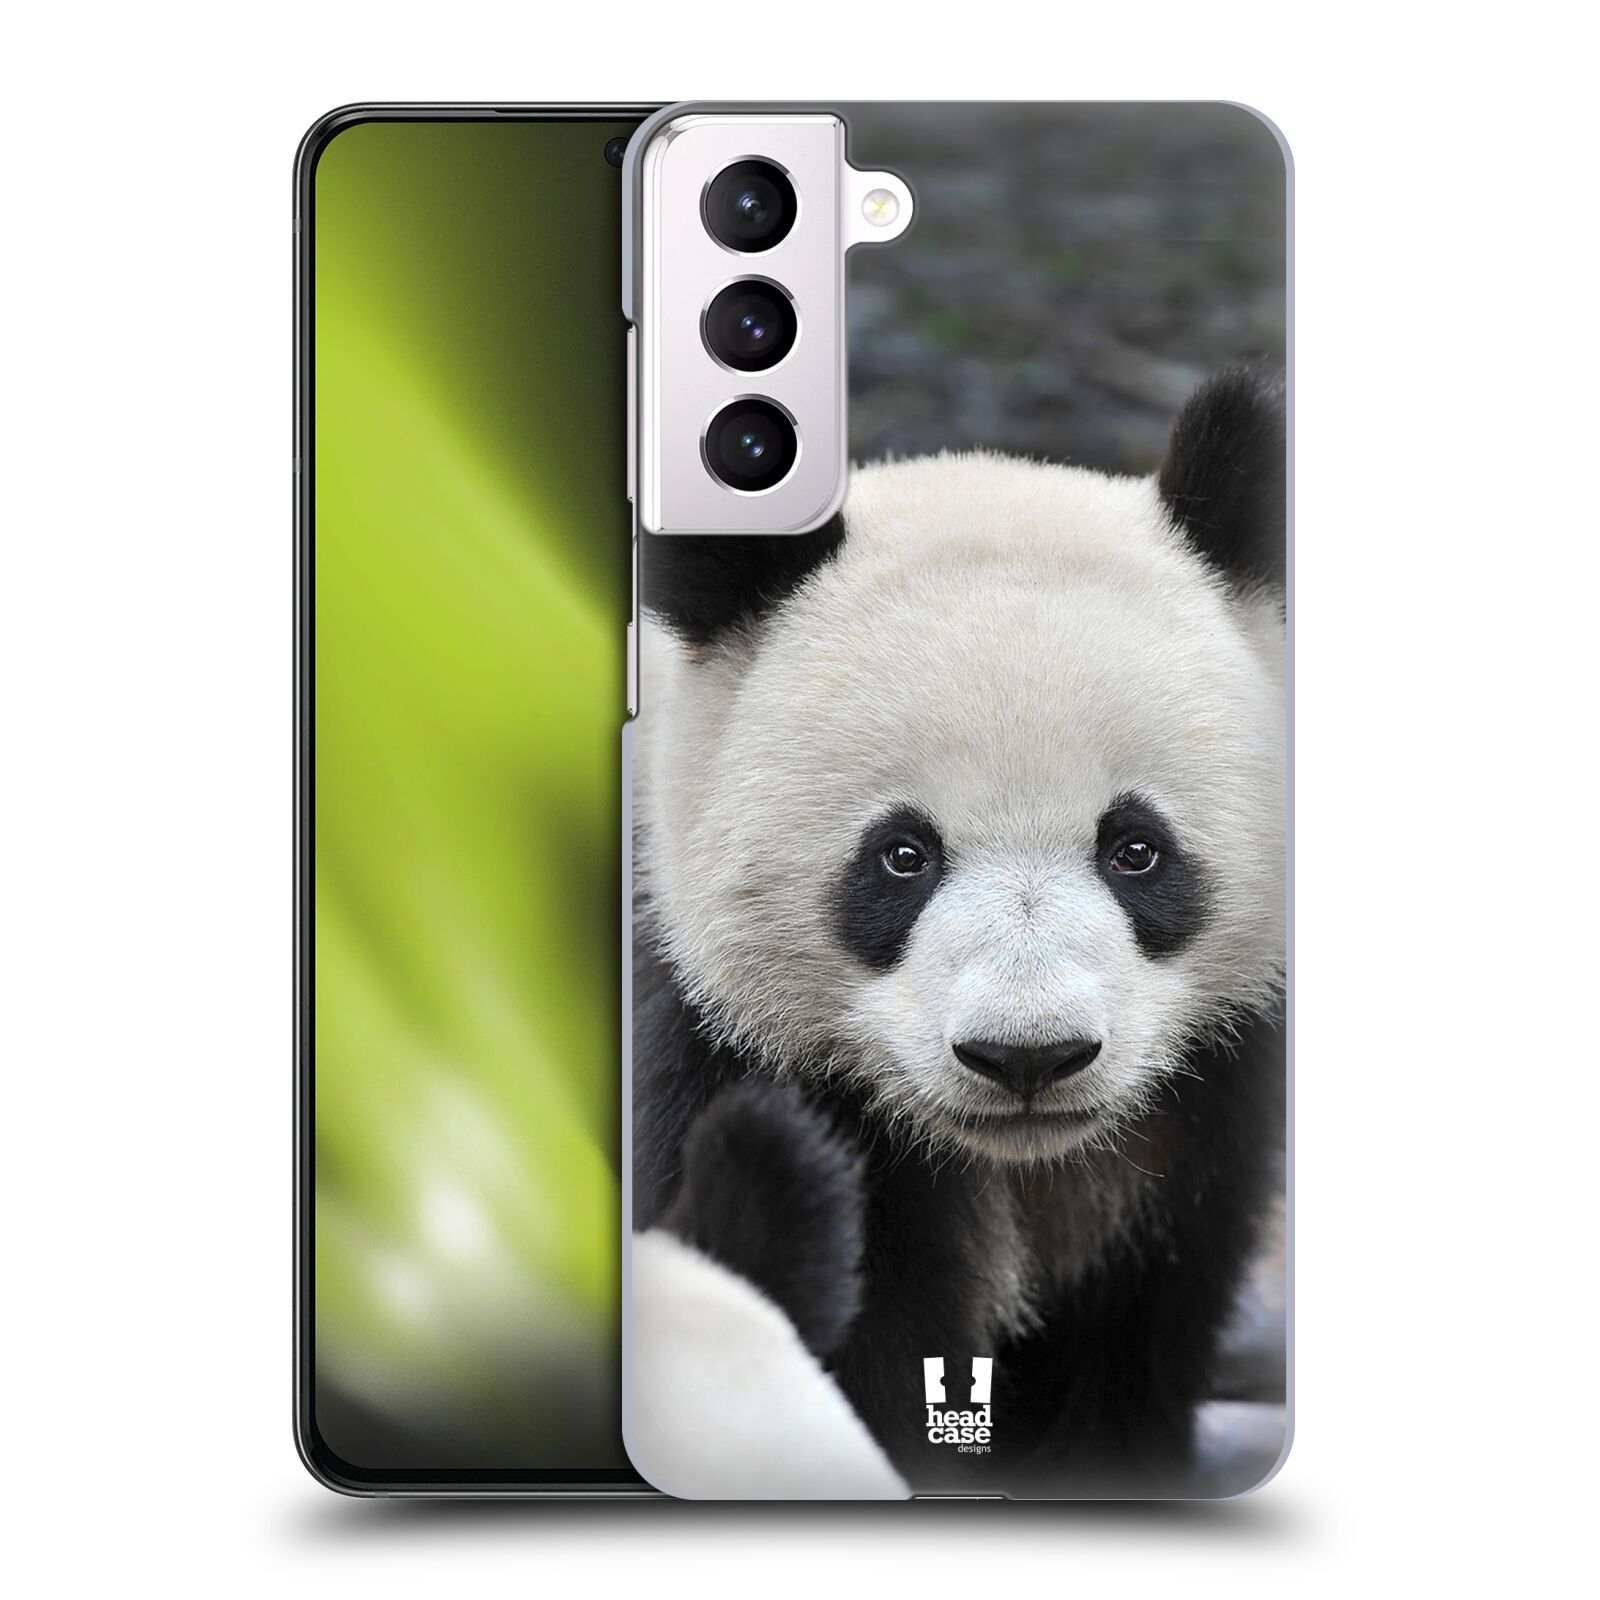 Zadní obal pro mobil Samsung Galaxy S21+ / S21+ 5G - HEAD CASE - Svět zvířat medvěd panda